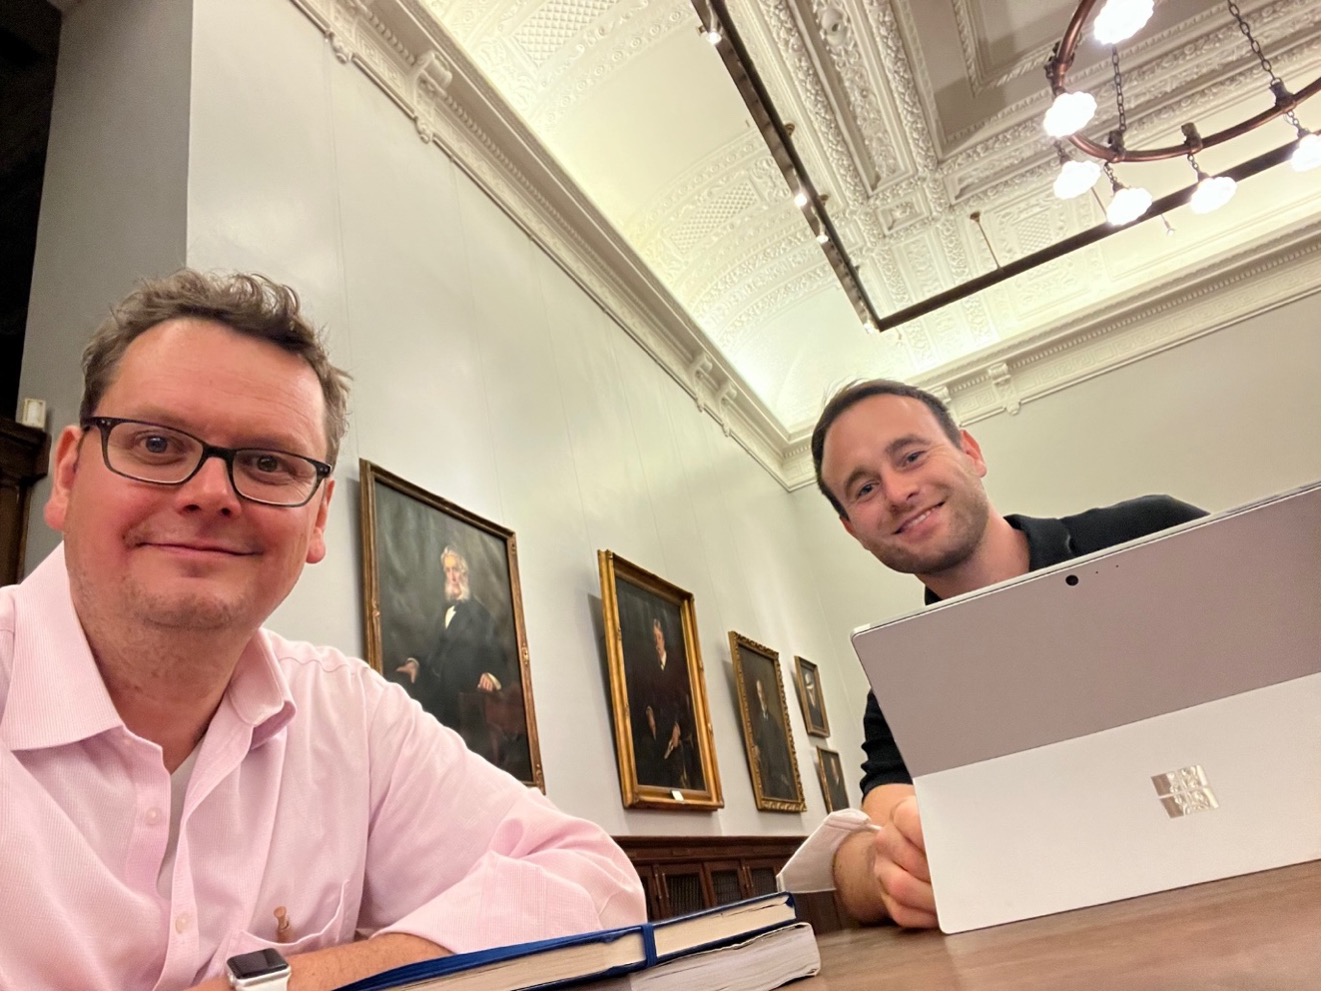 Mathias und Dominik bereiten sich auf die Unternehmensgespräche vor in der altehrwürdigen New York Public Library im New Yorker Stadtteil Manhattan